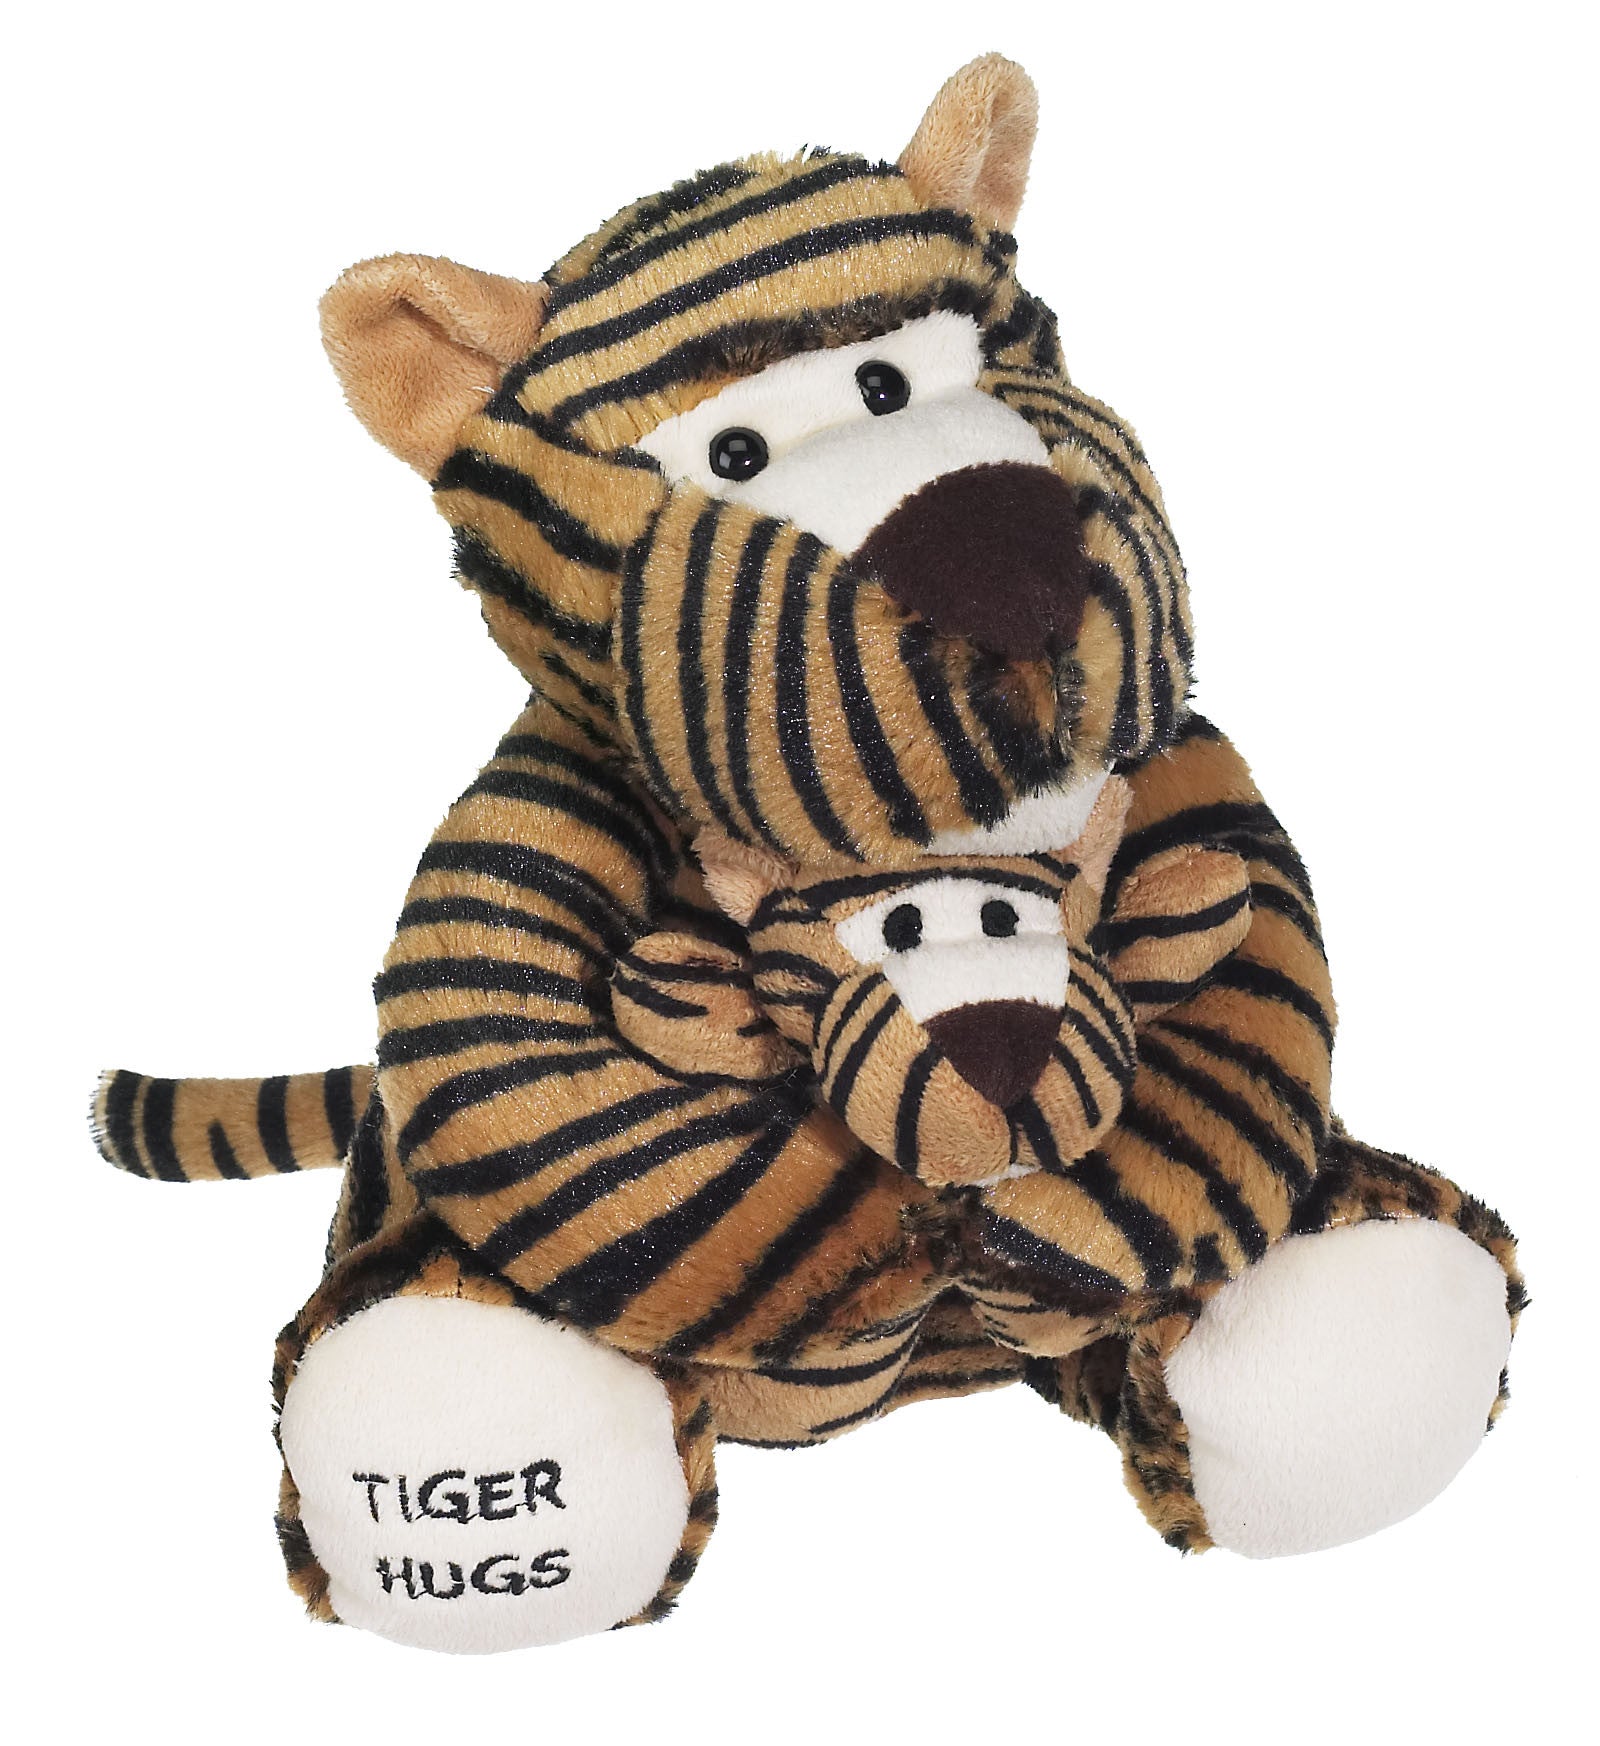 Tiger Hugs 9" - 16018